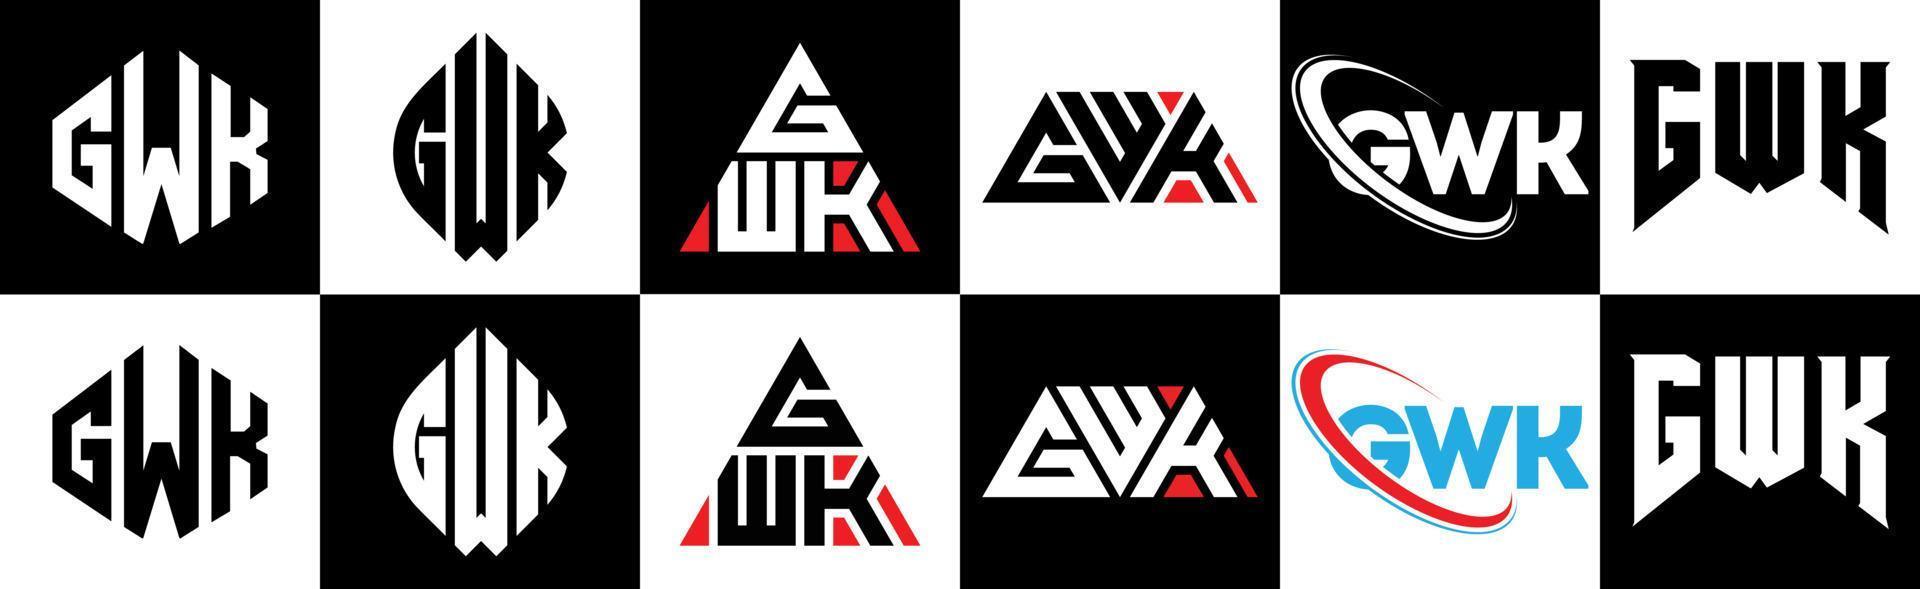 diseño de logotipo de letra gwk en seis estilos. gwk polígono, círculo, triángulo, hexágono, estilo plano y simple con logotipo de letra de variación de color blanco y negro en una mesa de trabajo. logotipo minimalista y clásico de gwk vector